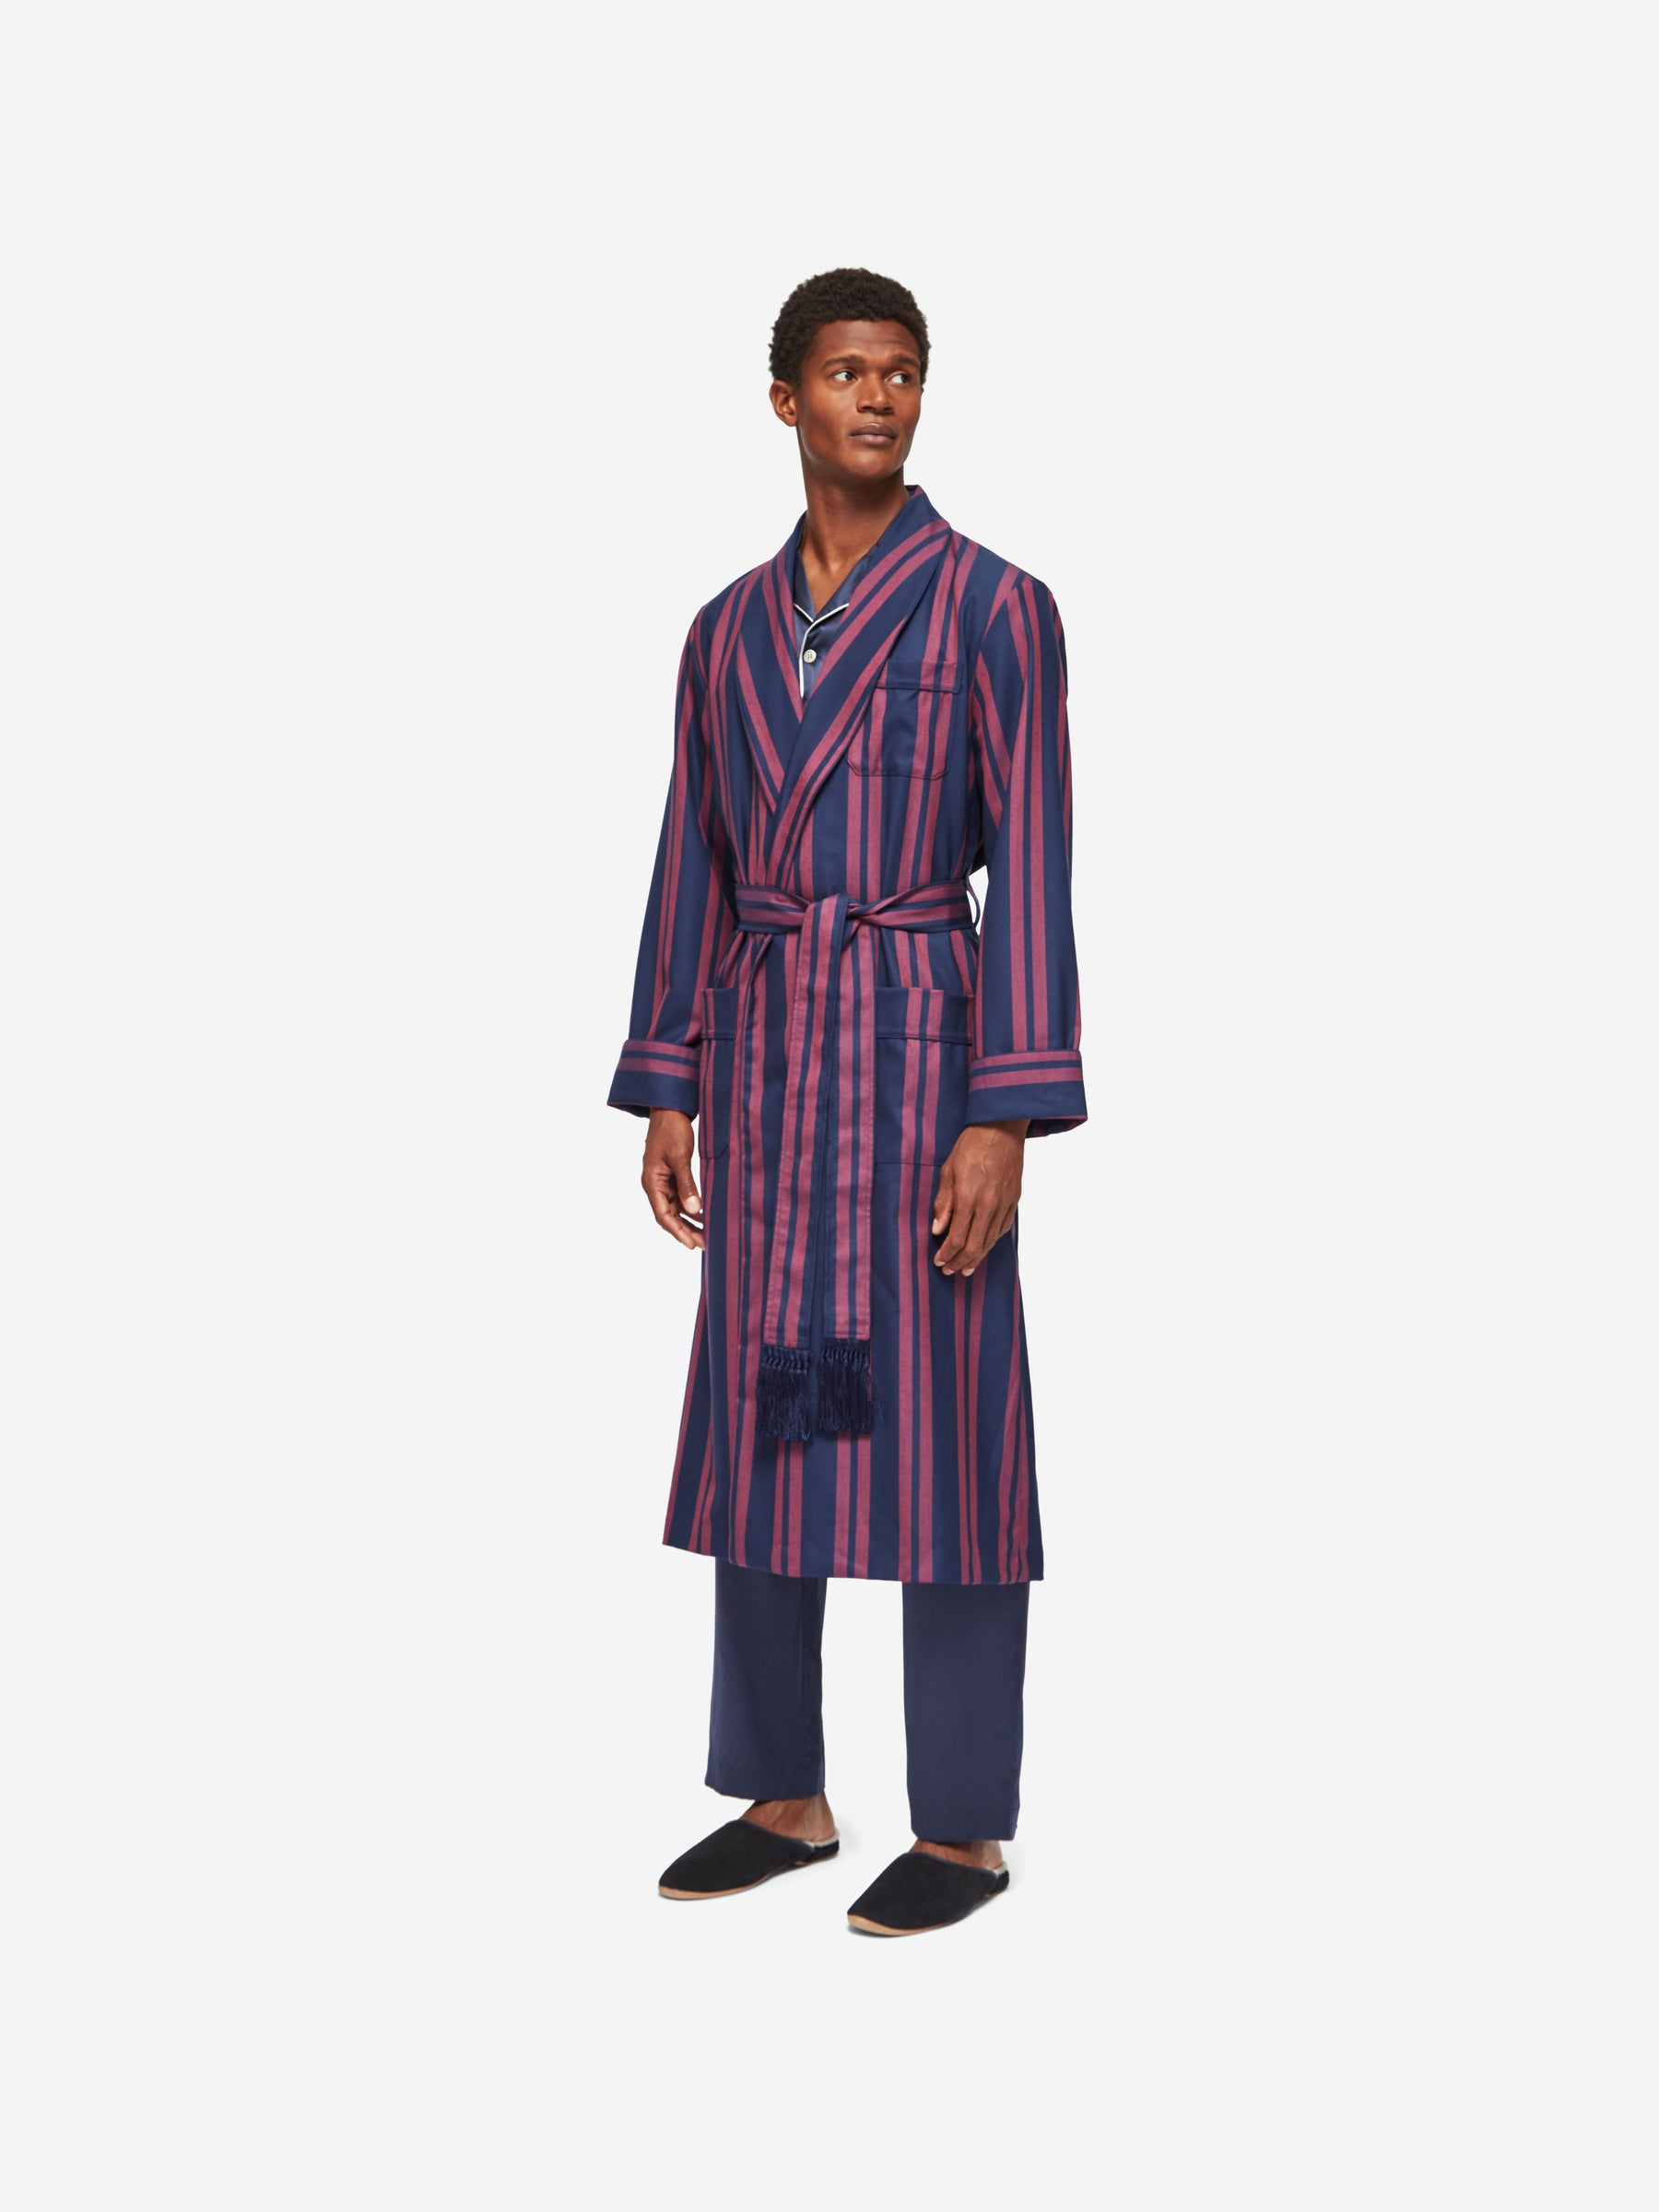 Hermès Inspired Handwoven Yak Wool Robe  Maharani